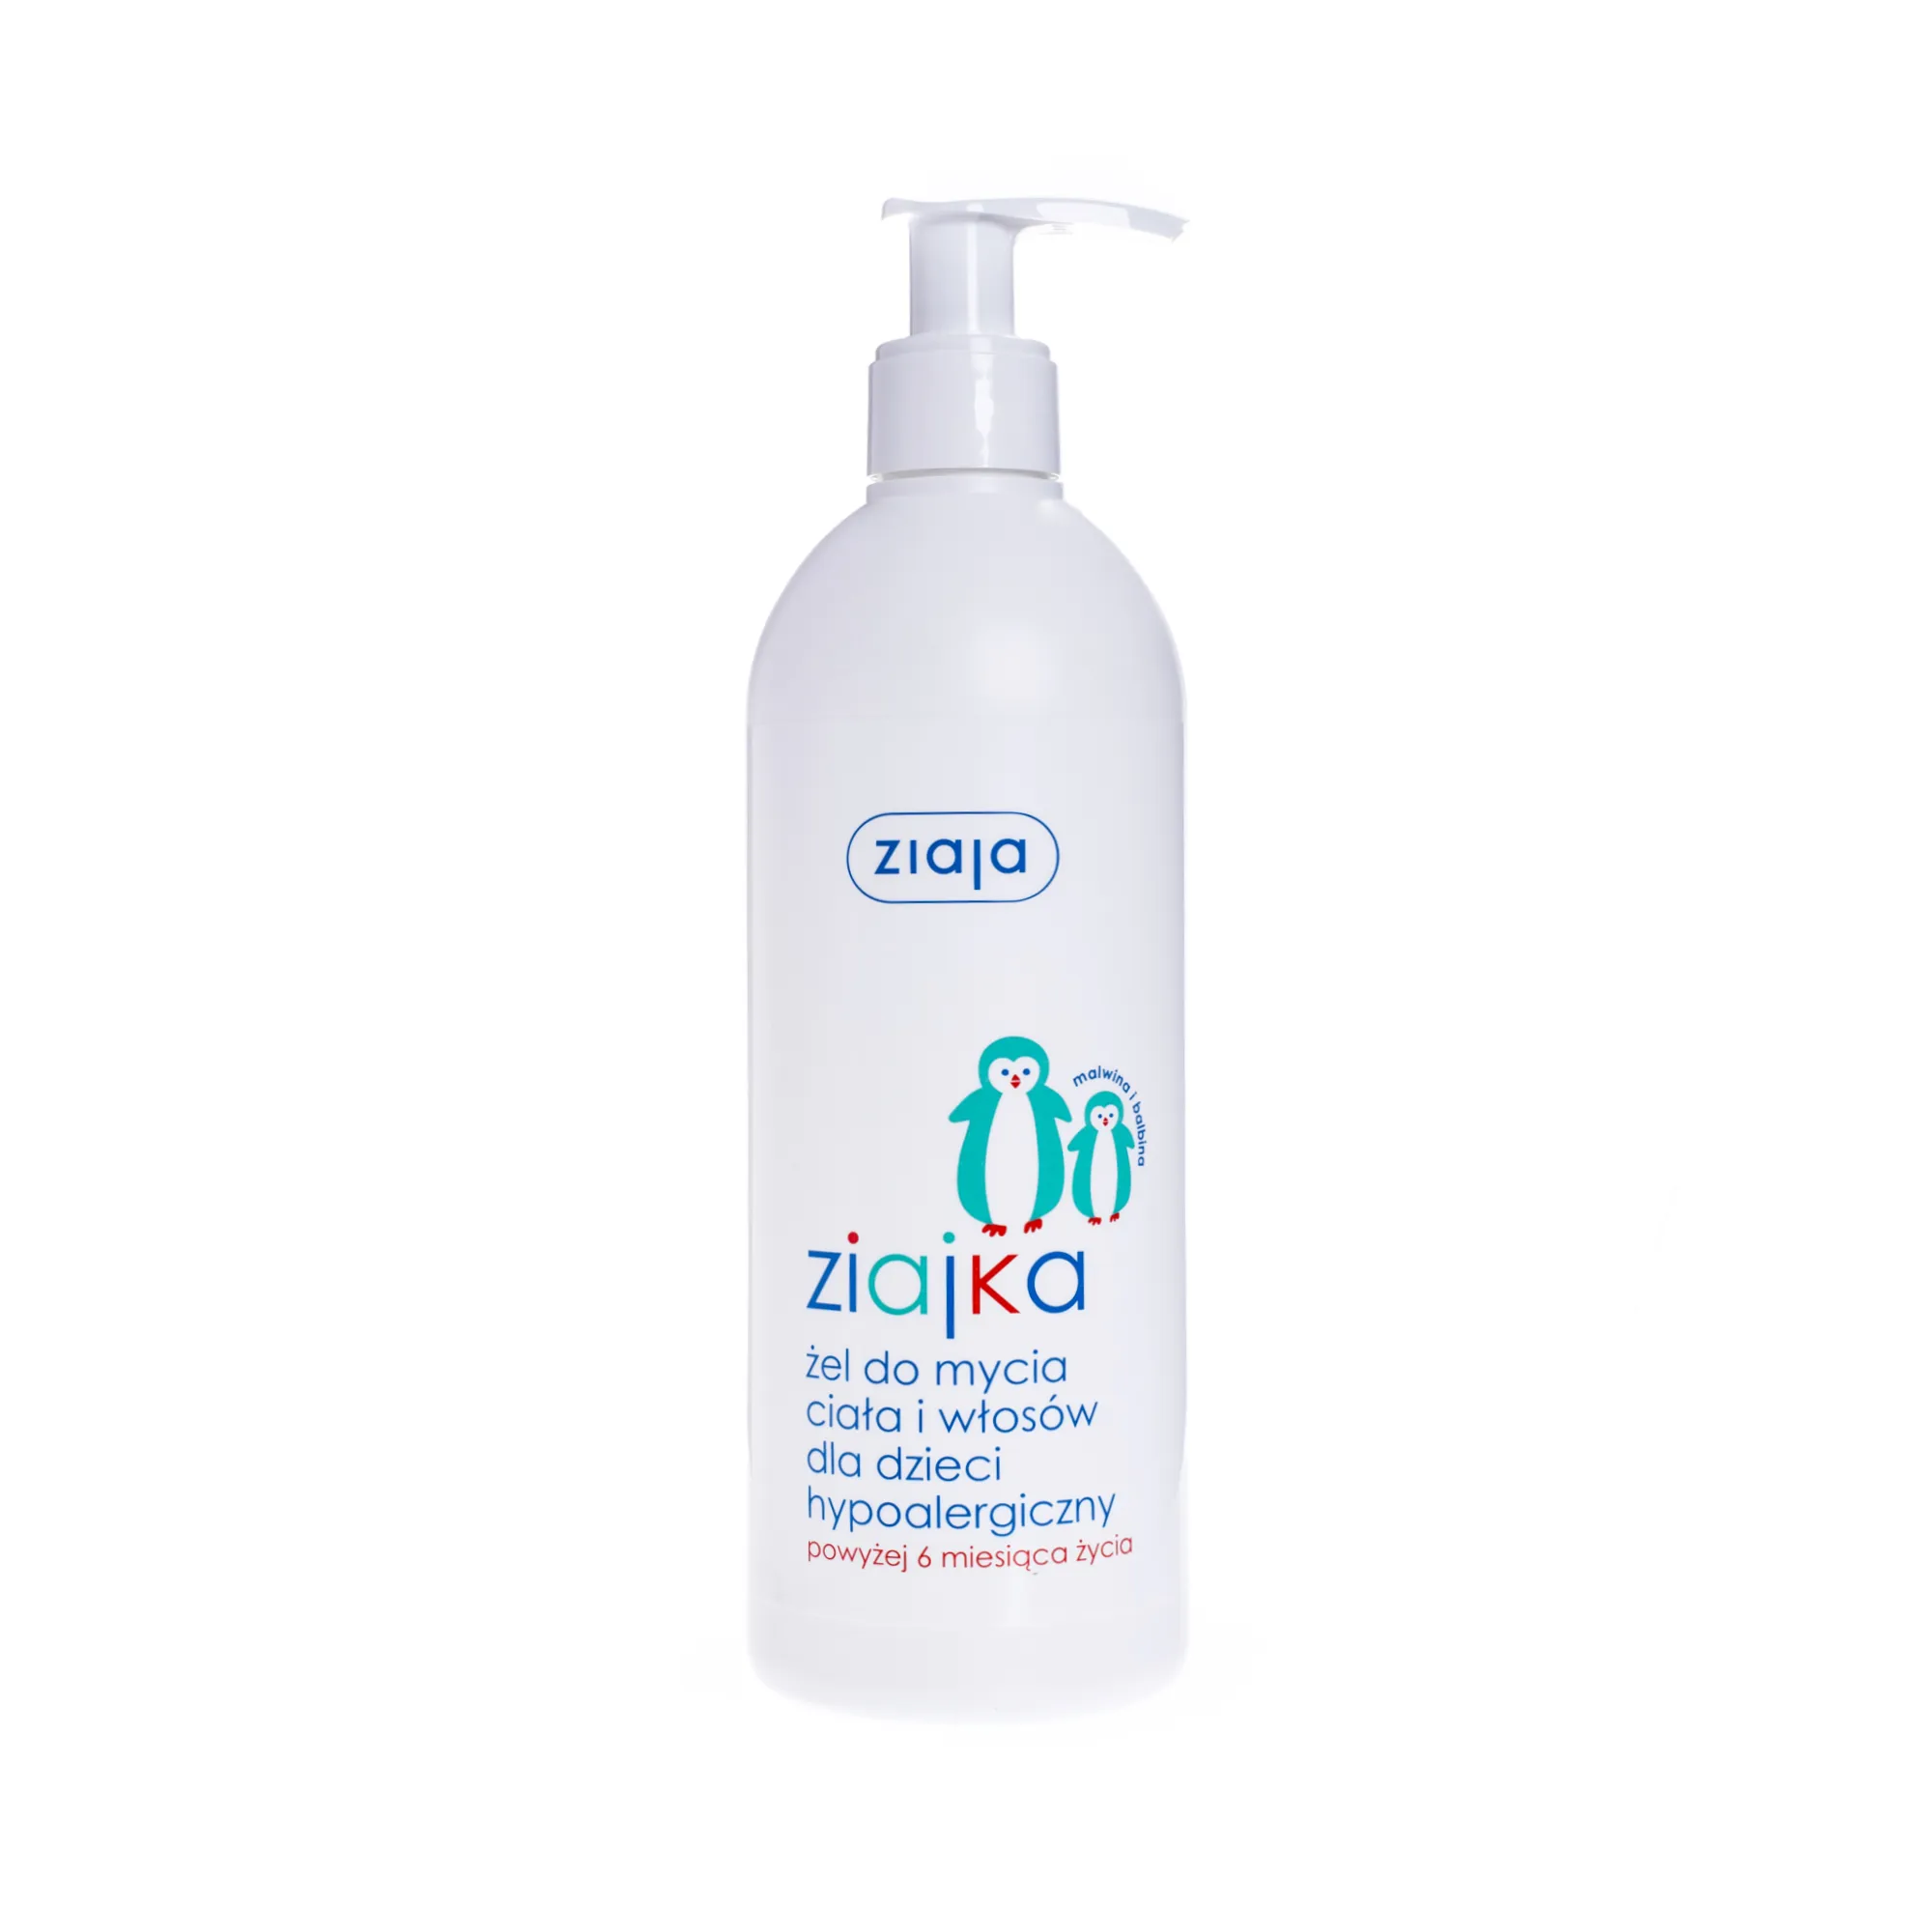 Ziaja Ziajka, hypoalergiczny żel do mycia ciała i włosów dla dzieci, 400 ml 